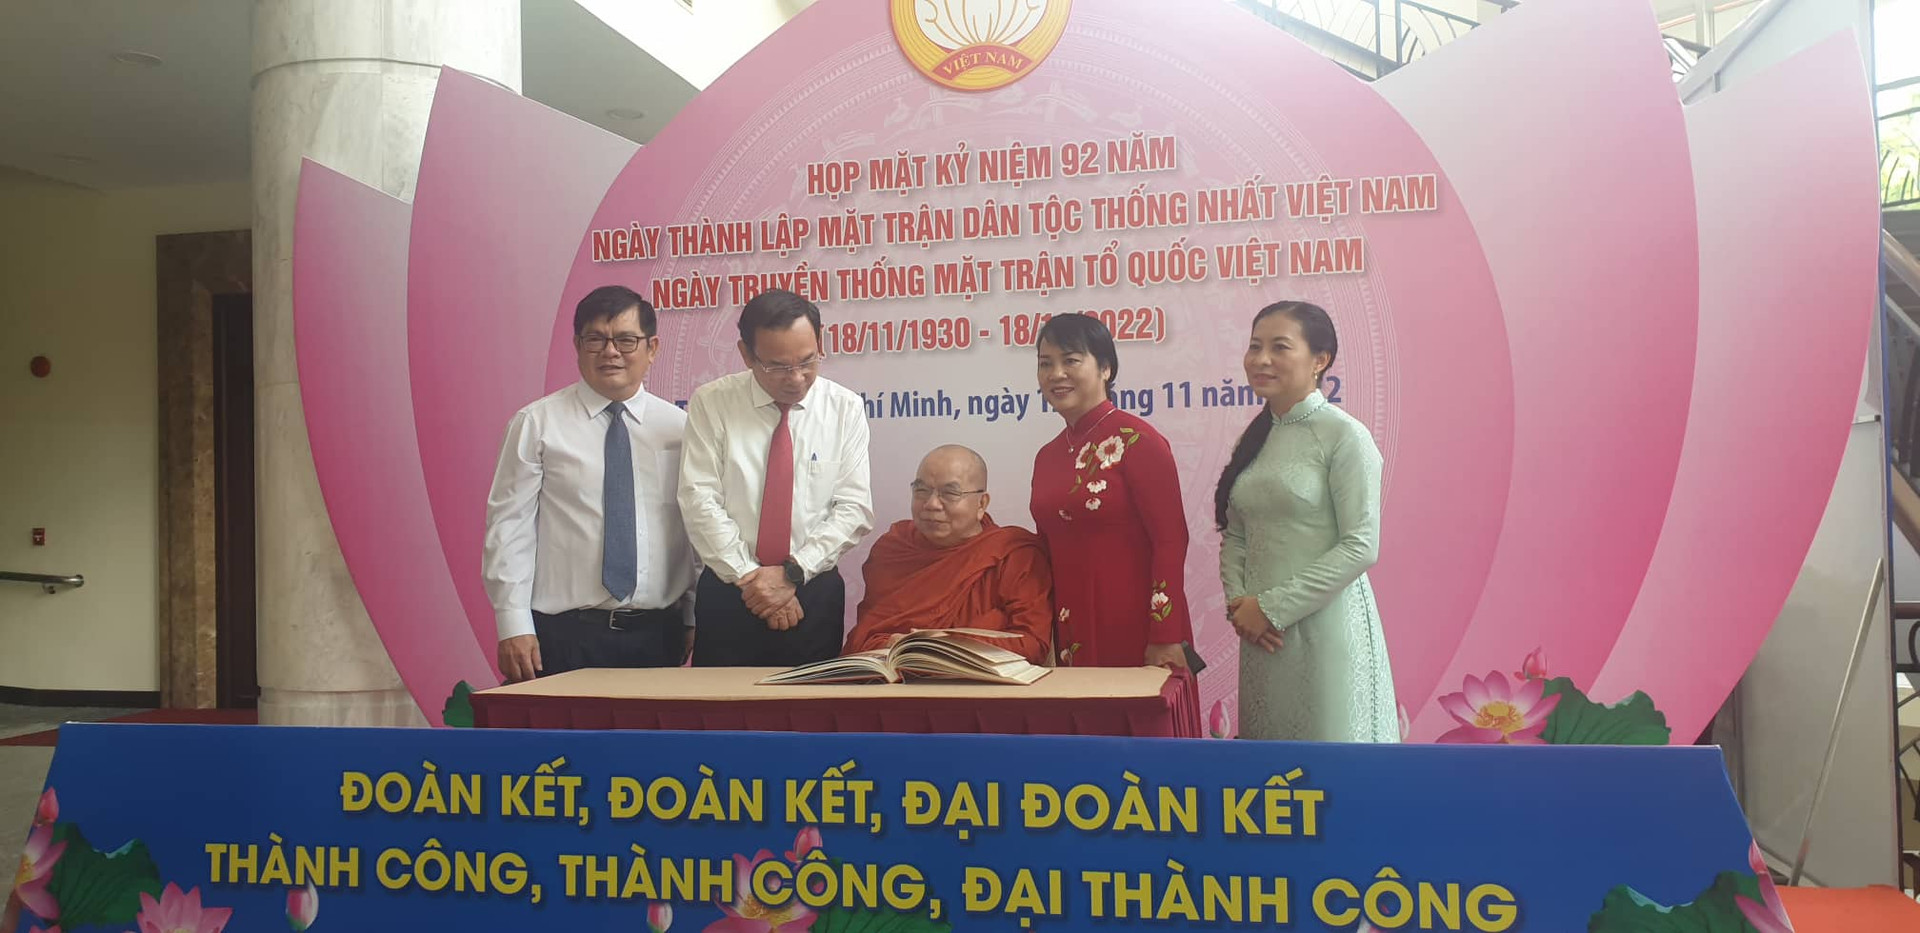 Bí thư Nguyễn Văn Nên và Chủ tịch MTTQ Việt Nam TP HCM Trần Kim Yến chứng kiến các tập thể, cá nhân nhận Giải thưởng “Đại đoàn kết toàn dân tộc TP HCM lần thứ 3 năm 2022” ký tên vào Biên niên danh dự.